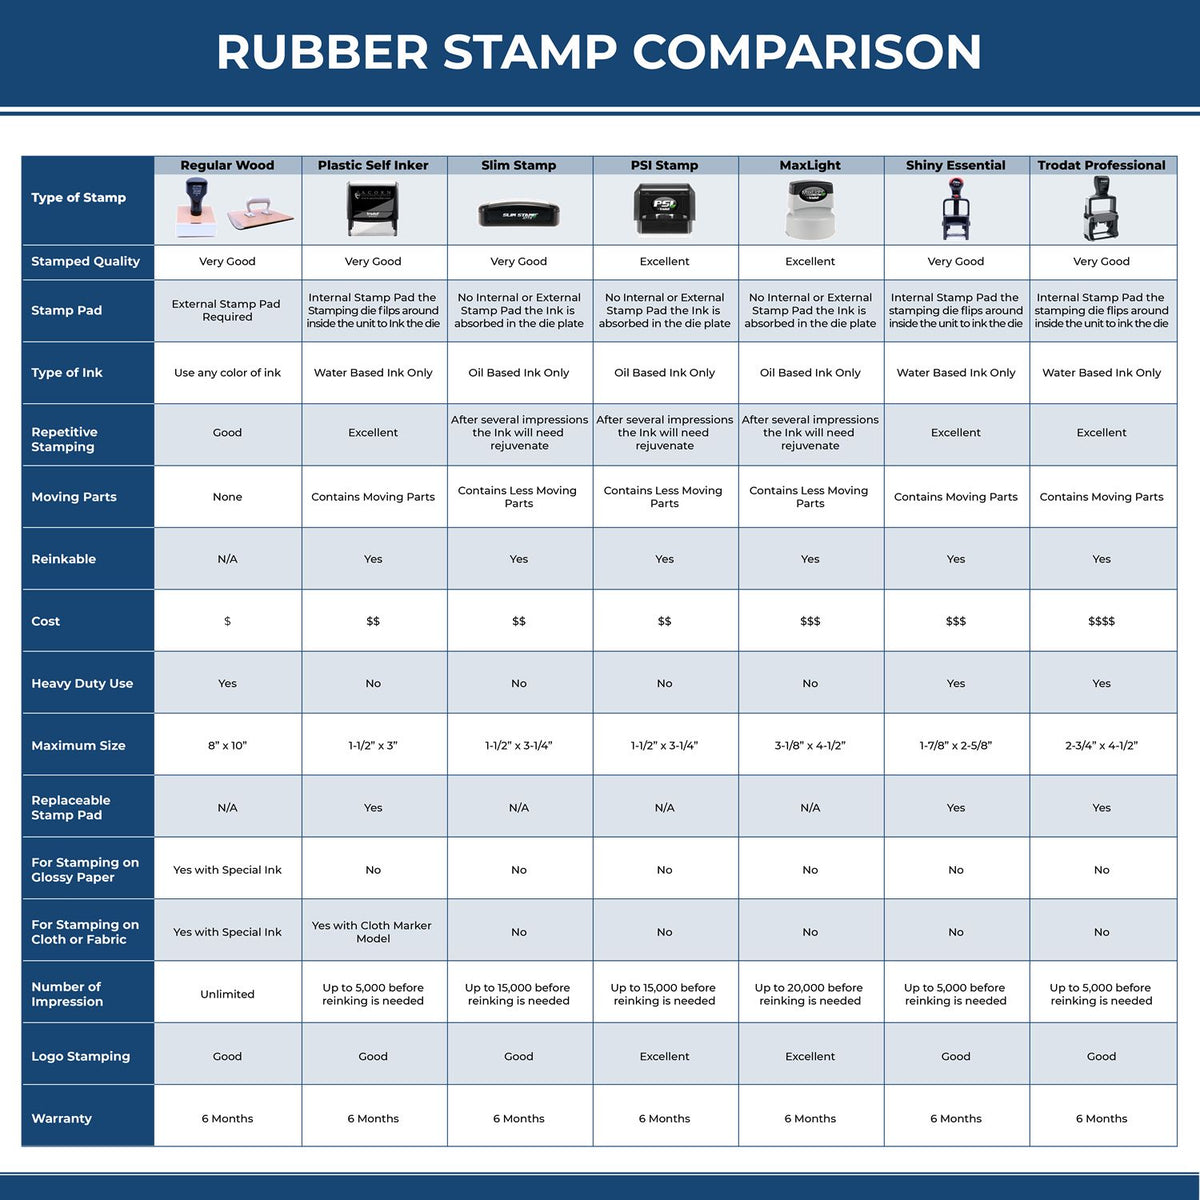 Attorney Client Privilege Rubber Stamp 4300R Rubber Stamp Comparison